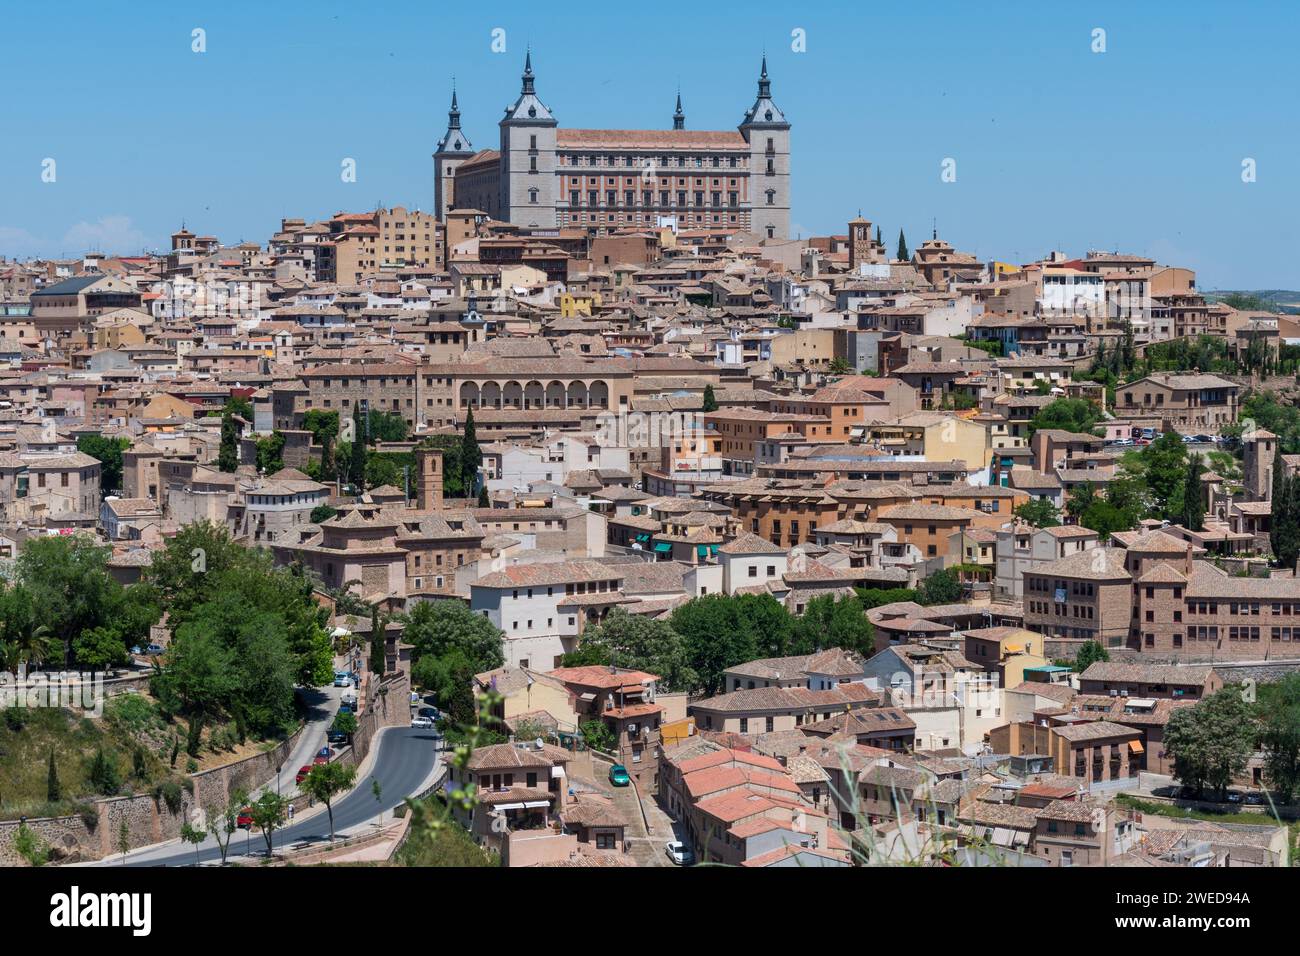 Capturer la beauté intemporelle de Tolède, en Espagne : un paysage panoramique mettant en valeur le charme historique et la splendeur architecturale Banque D'Images